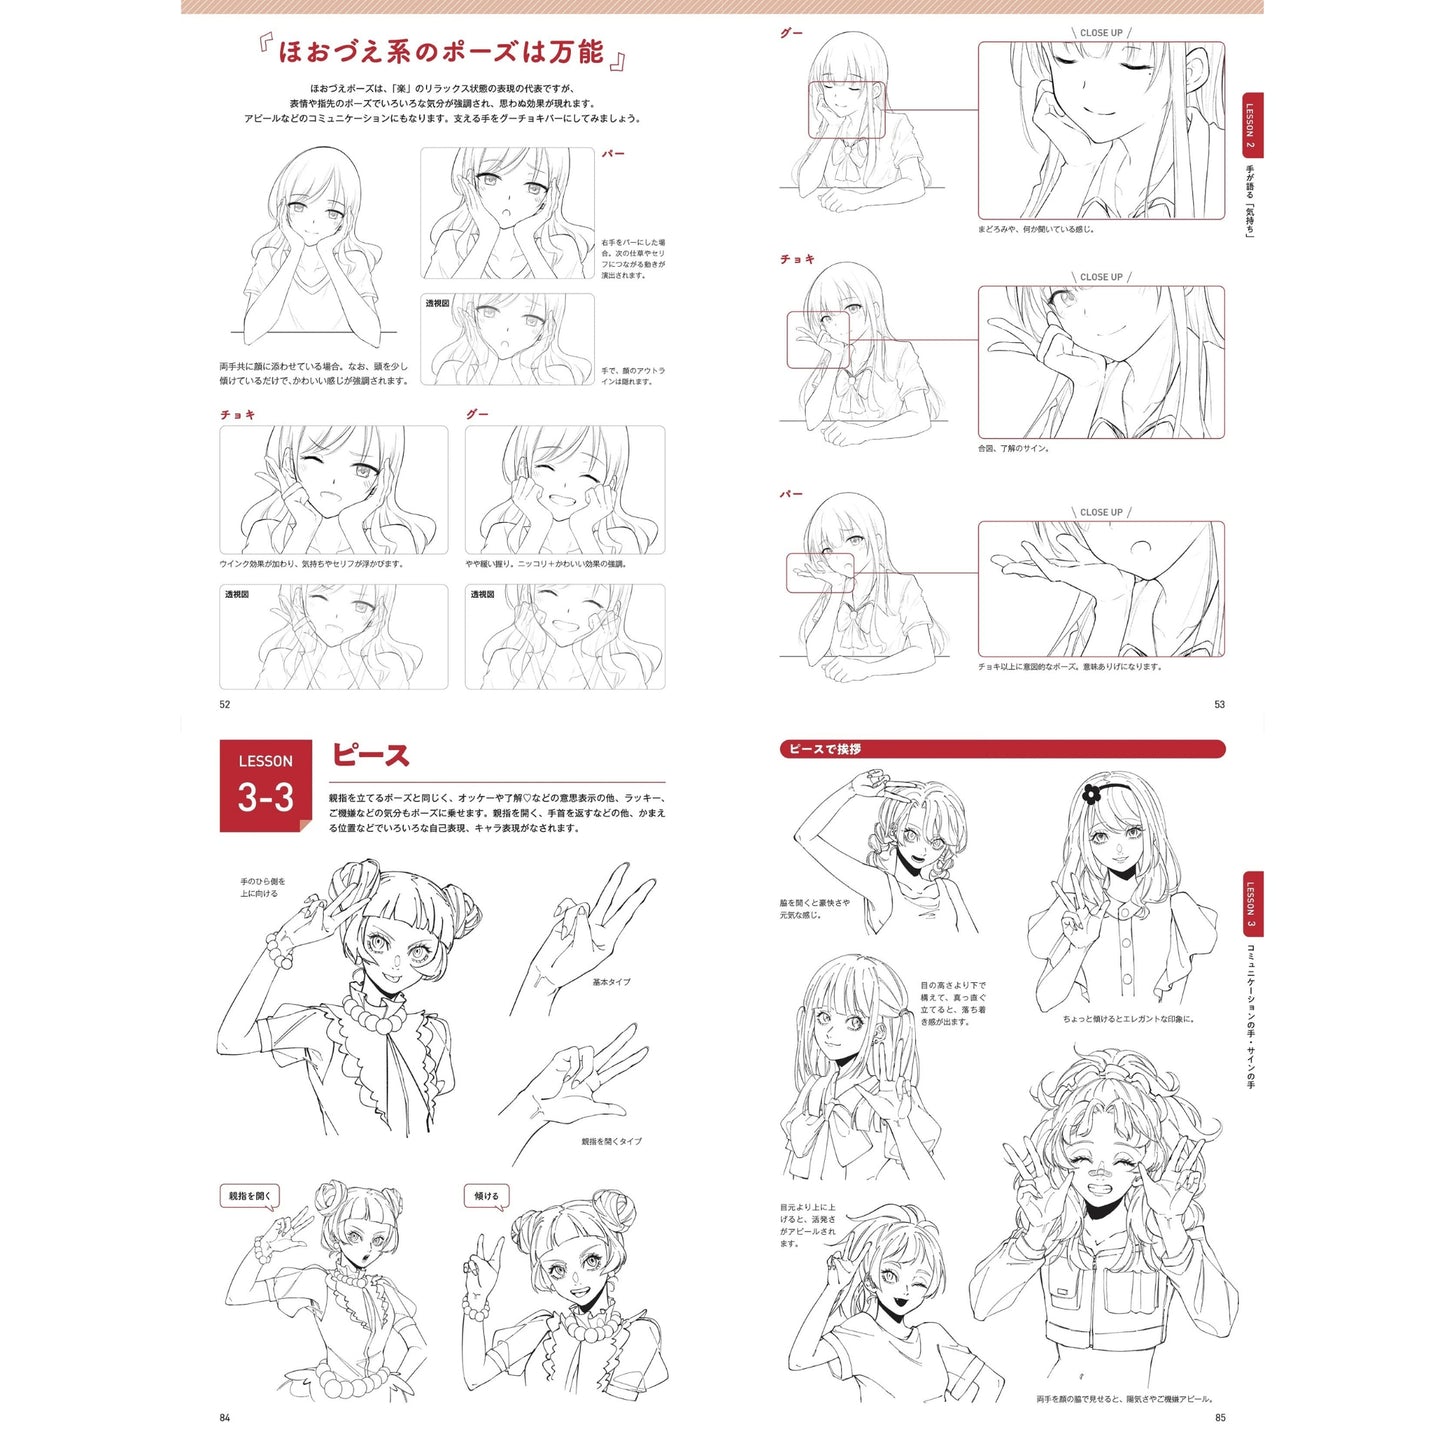 How to draw - jap. Zeichenbuch - Frauenhände - Anatomie und Gestiken der Hand